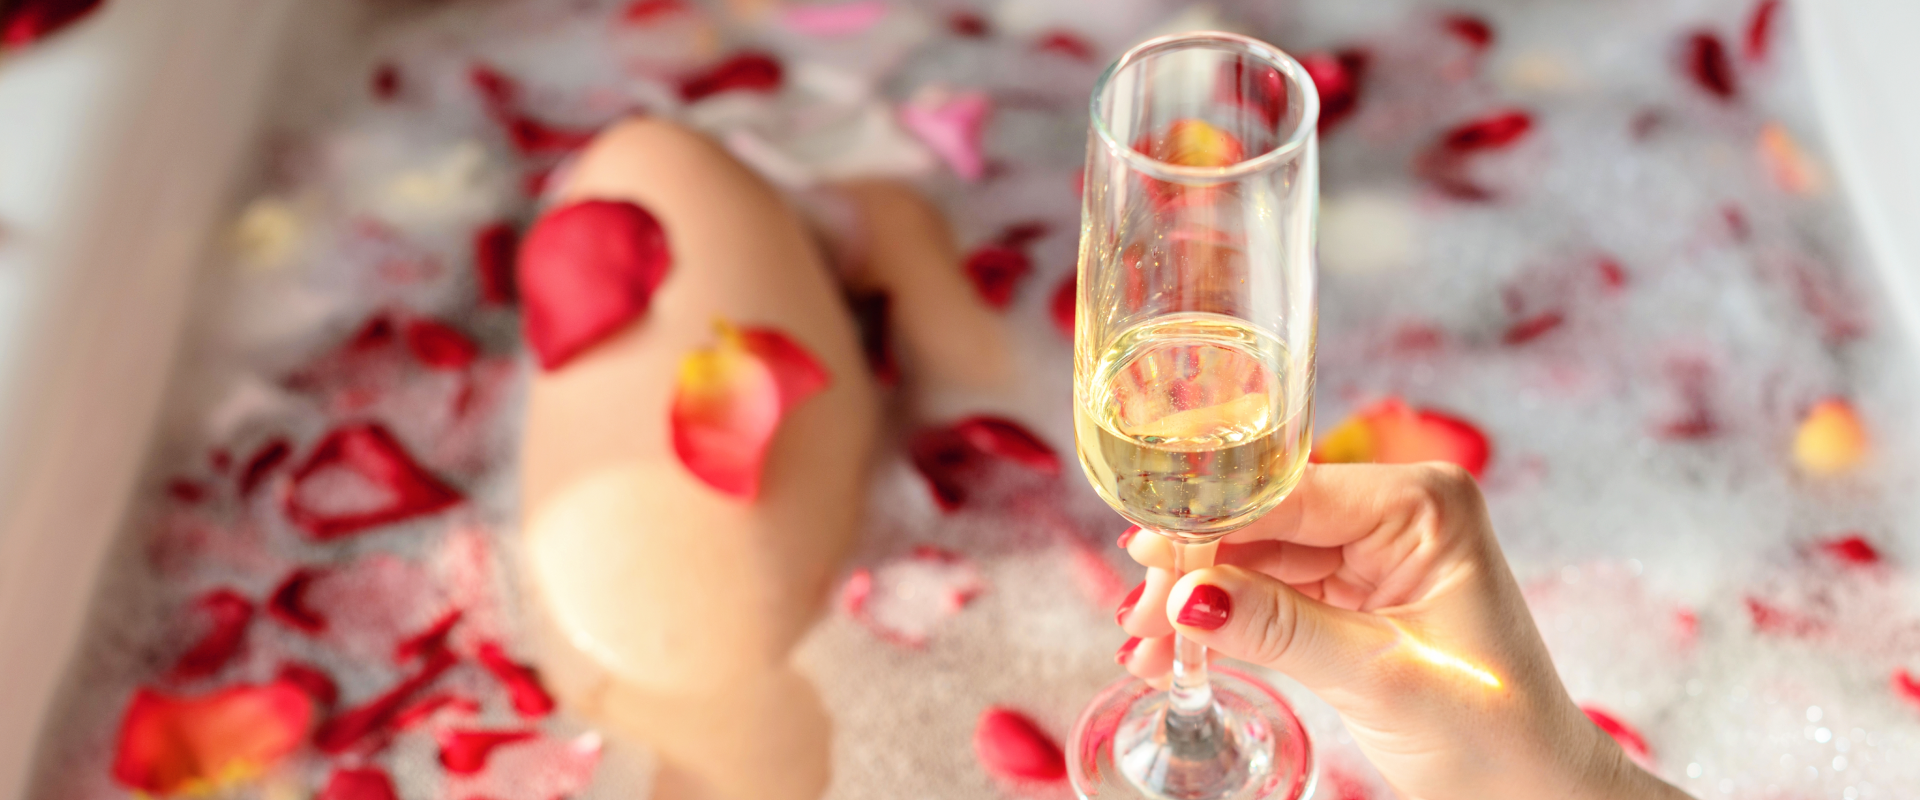 Mulher na banheira com pétalas de rosas e champagne.